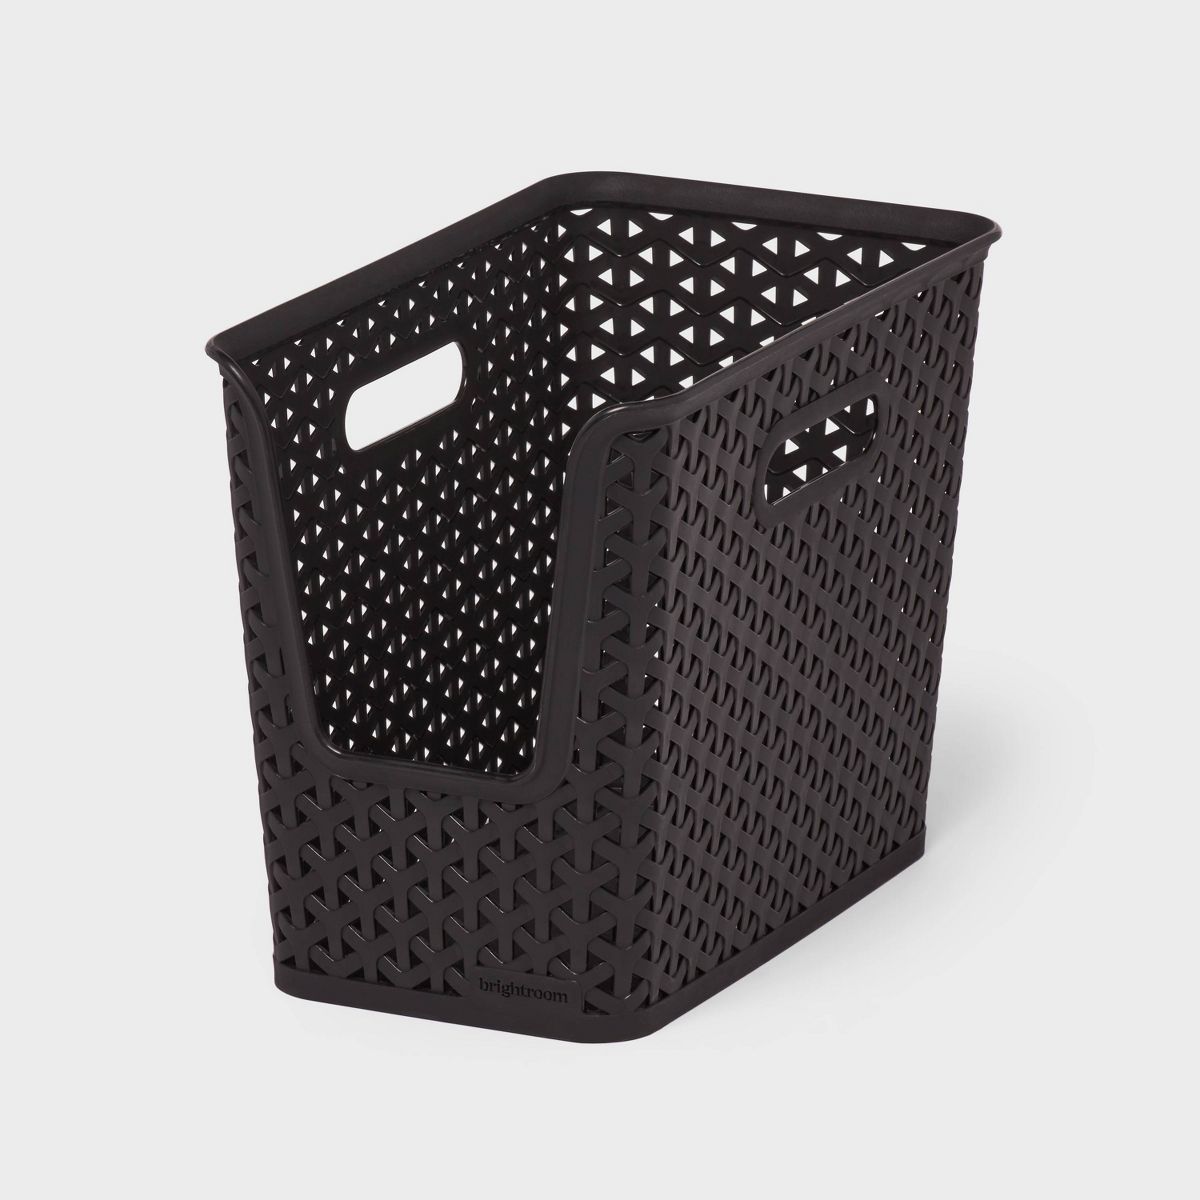 Y-Weave Narrow Easy Access Decorative Storage Basket Black - Brightroom™ | Target